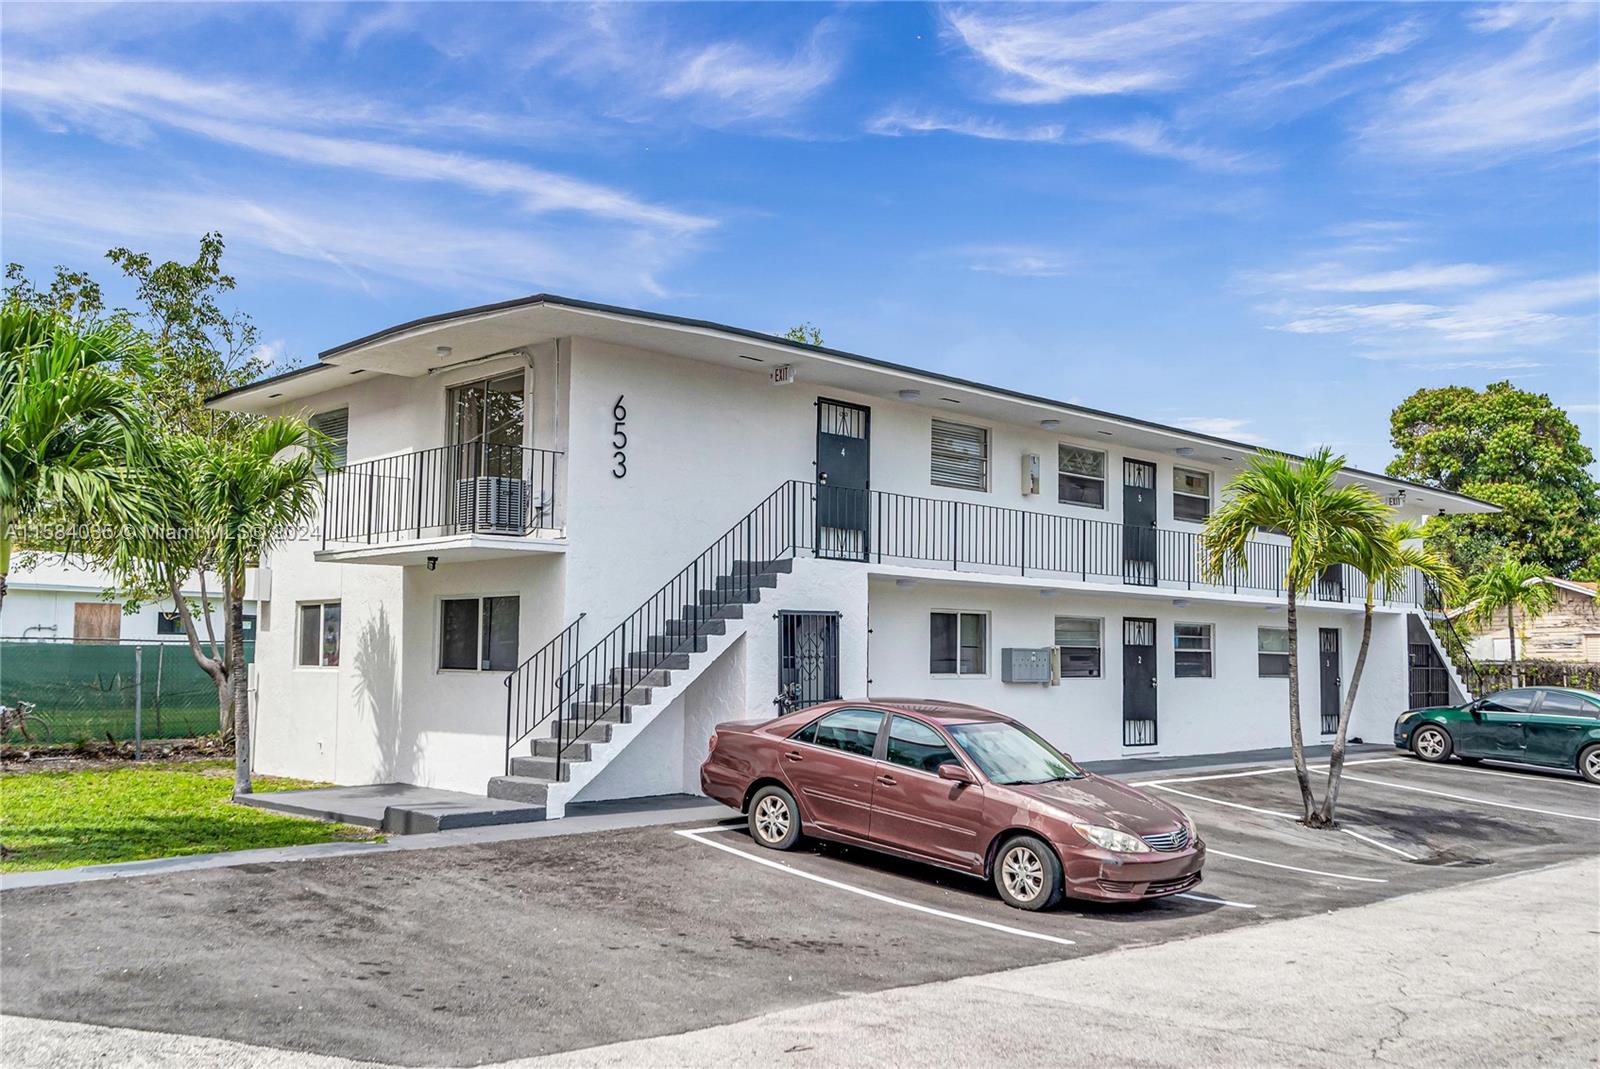 Rental Property at 653 Nw 30th St St, Miami, Broward County, Florida -  - $1,485,000 MO.